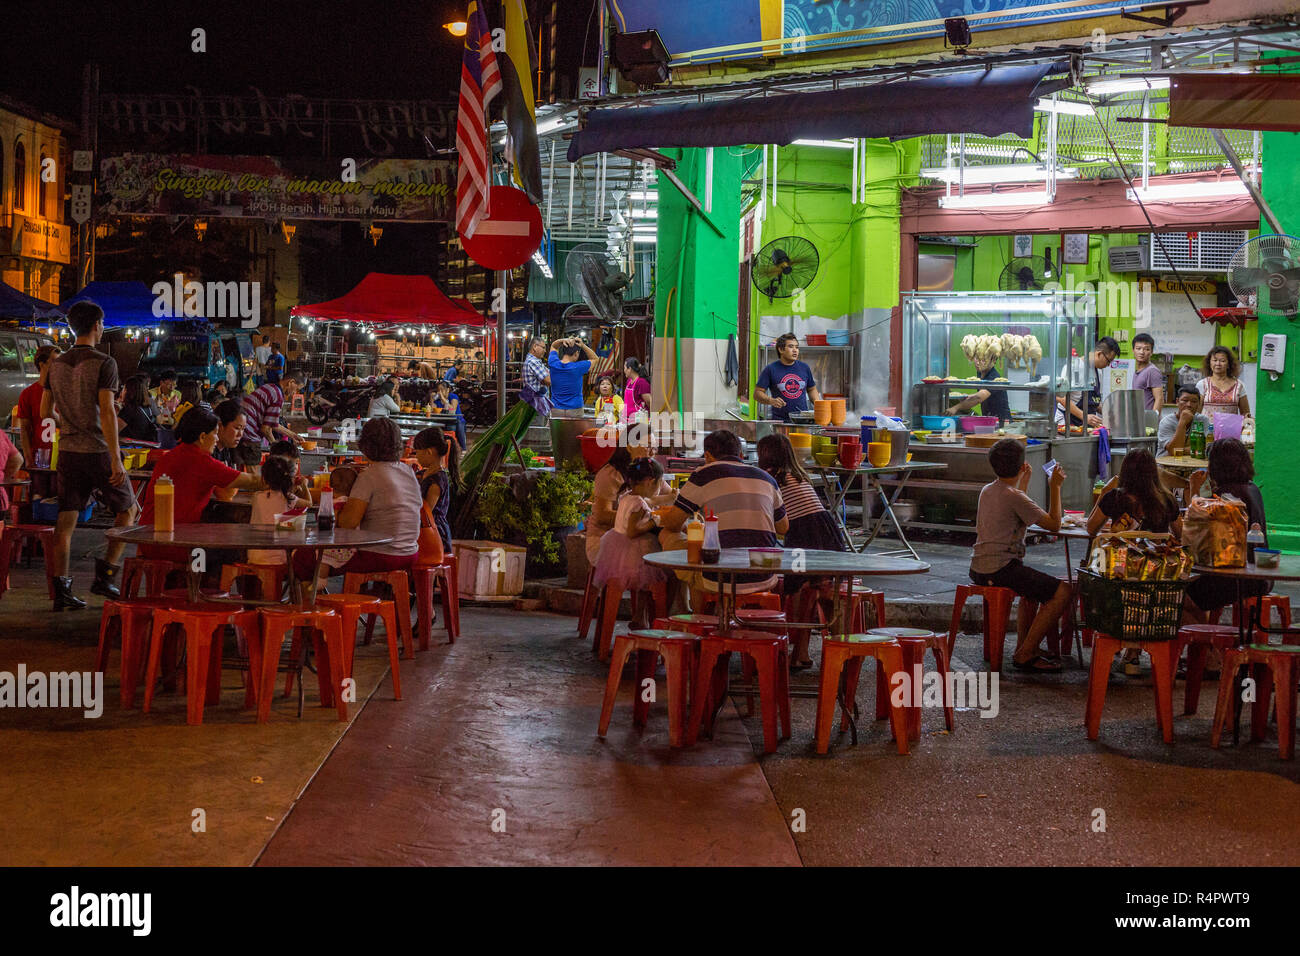 Famiglie cenare all'aperto durante la notte in un cafè sul marciapiede, Ipoh, Malaysia. Foto Stock